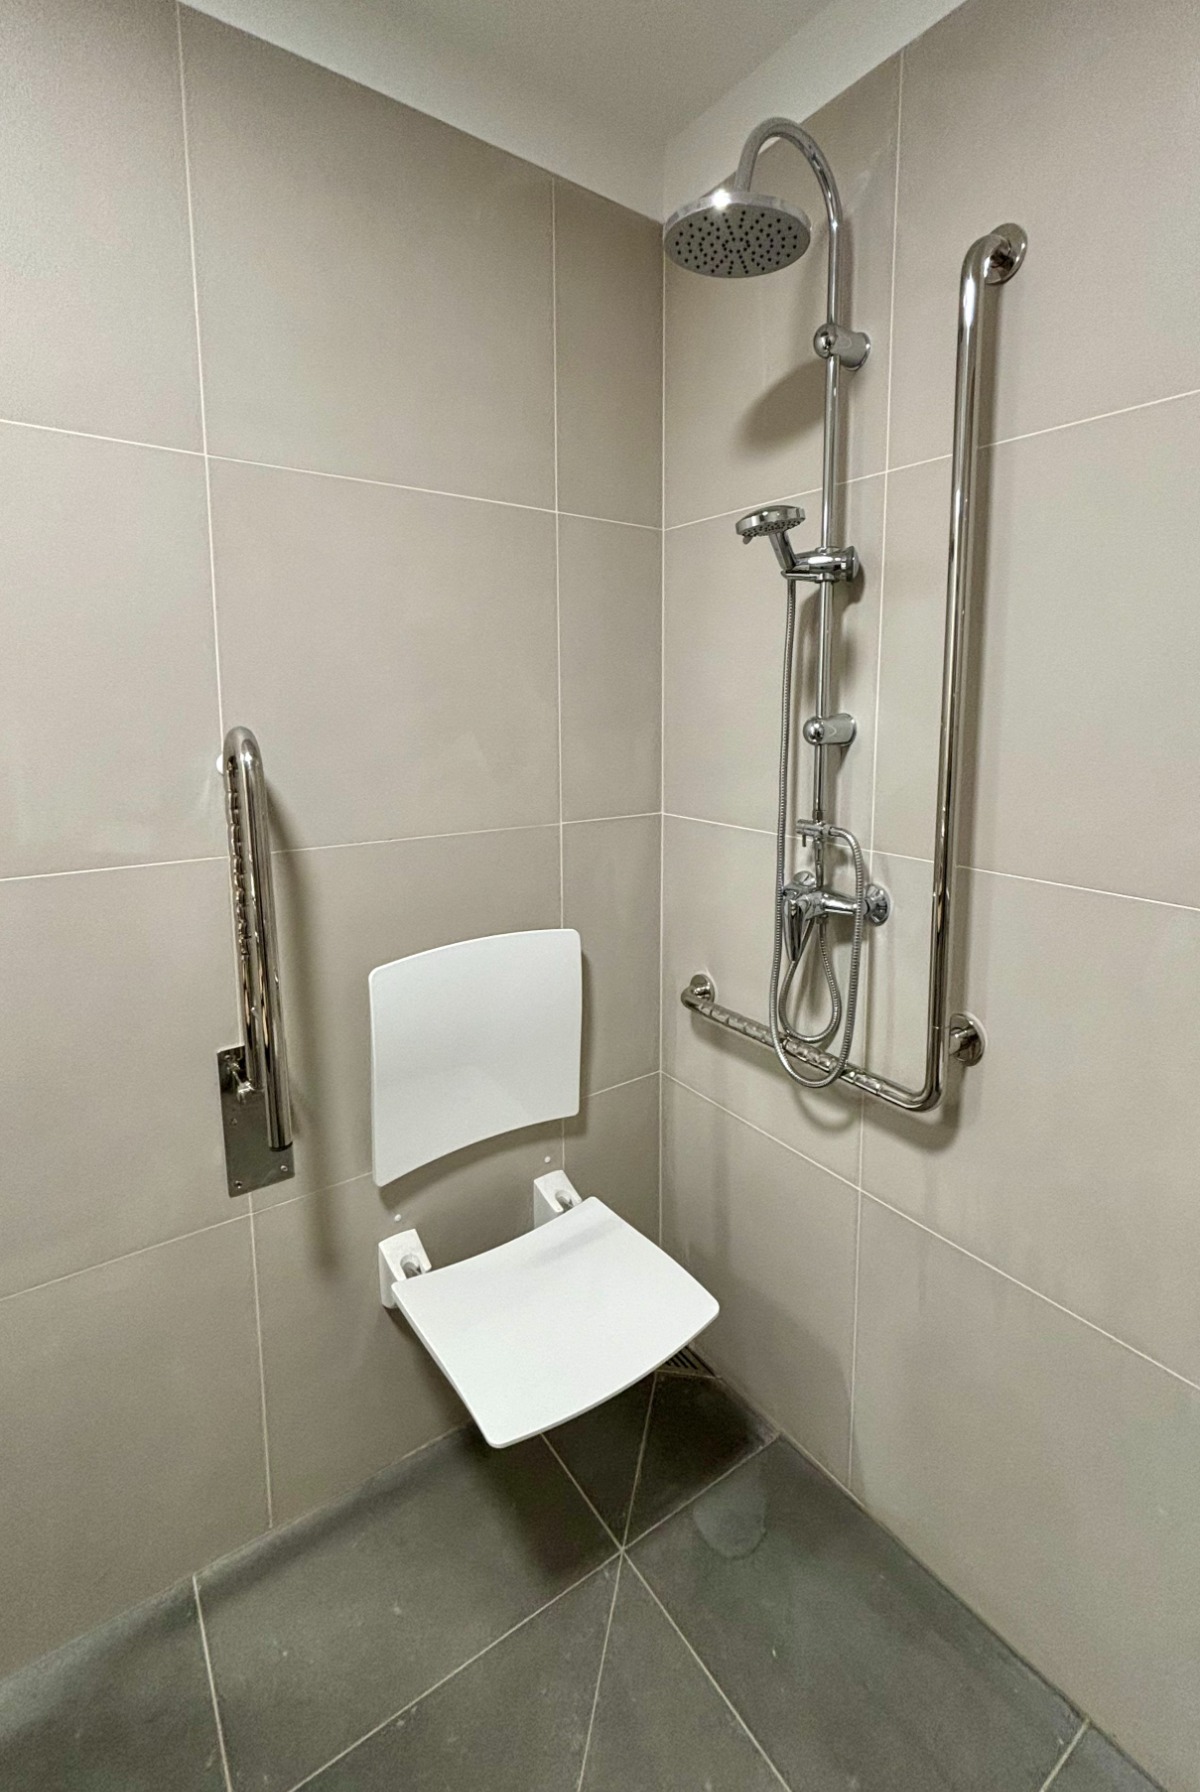 Dostosowana do potrzeb OzSzP toaleta w KS Zaścianek, widoczne składane krzesełko prysznicowe 